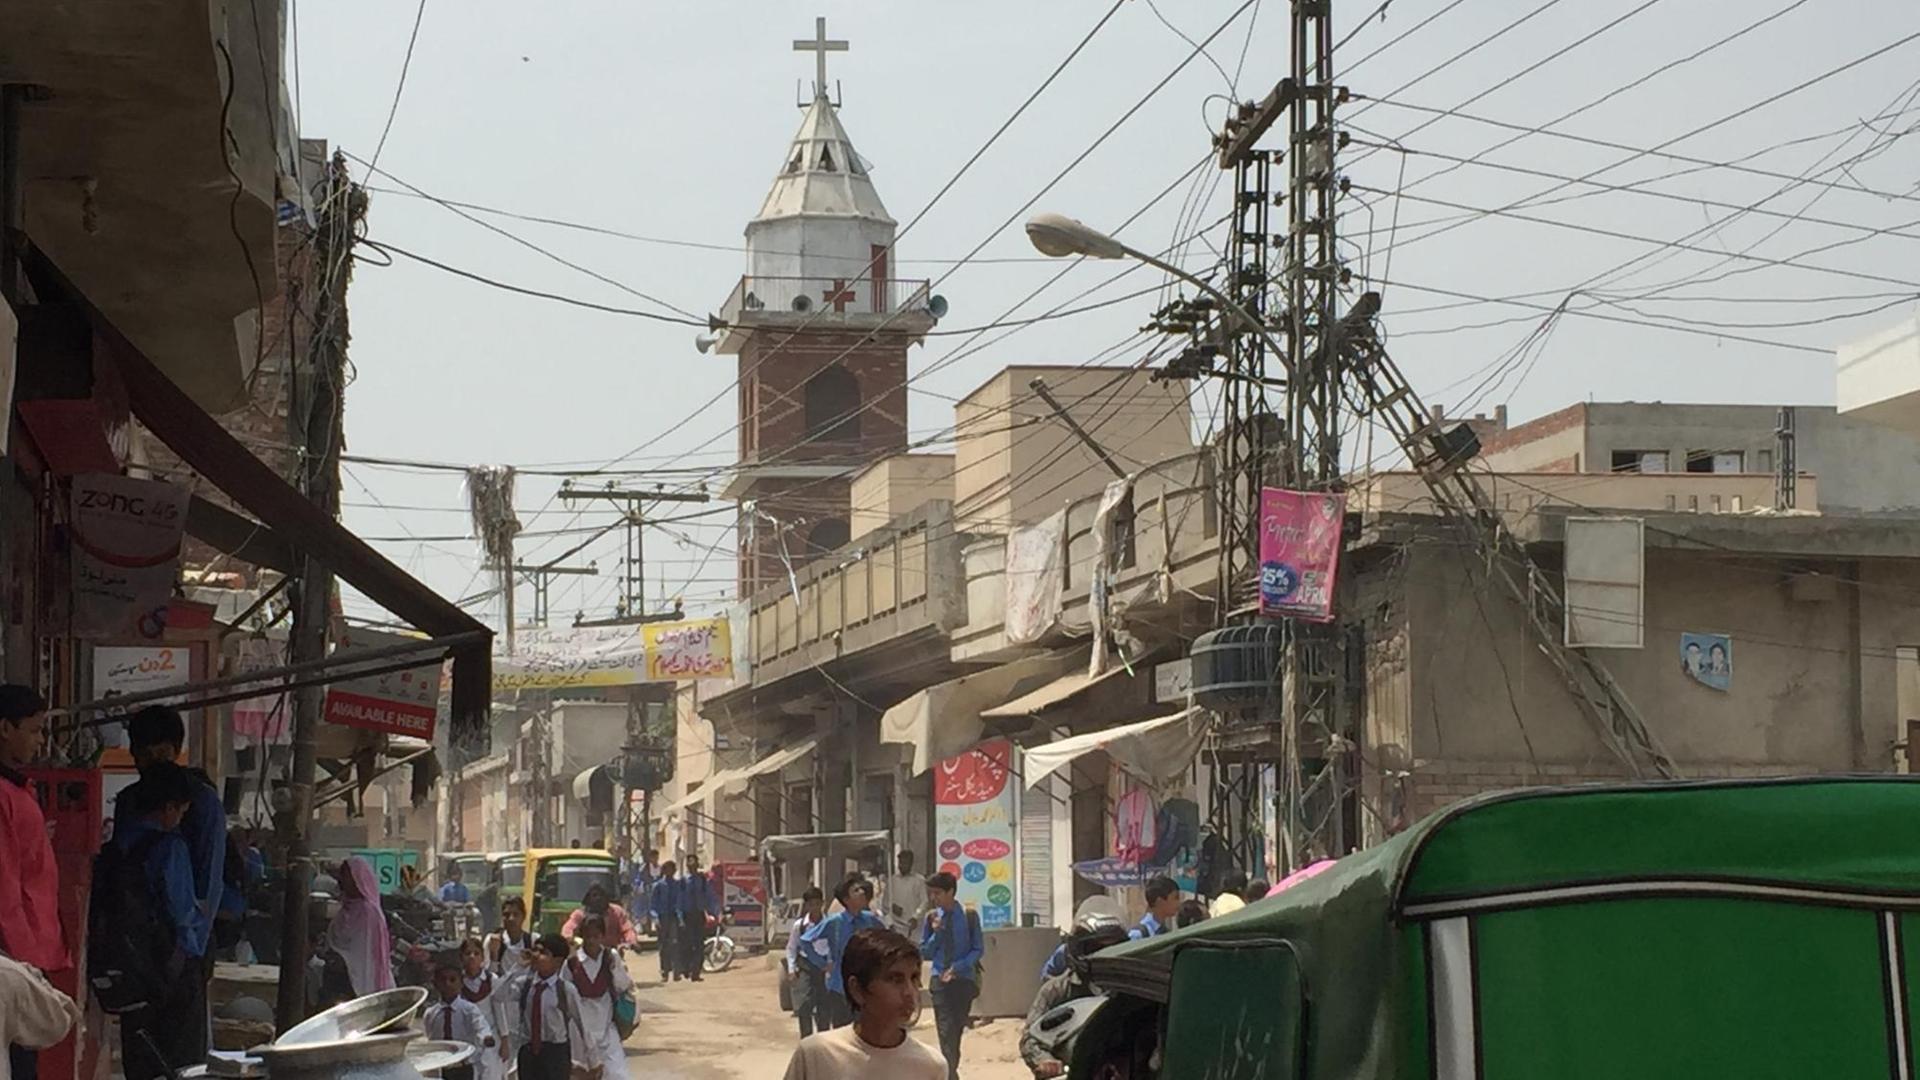 Vor dem Eingangstor des Kirchengeländes in Youhanabad, einem Stadtteil von Lahore in Pakistan, hatte sich ein Extremist in die Luft gejagt